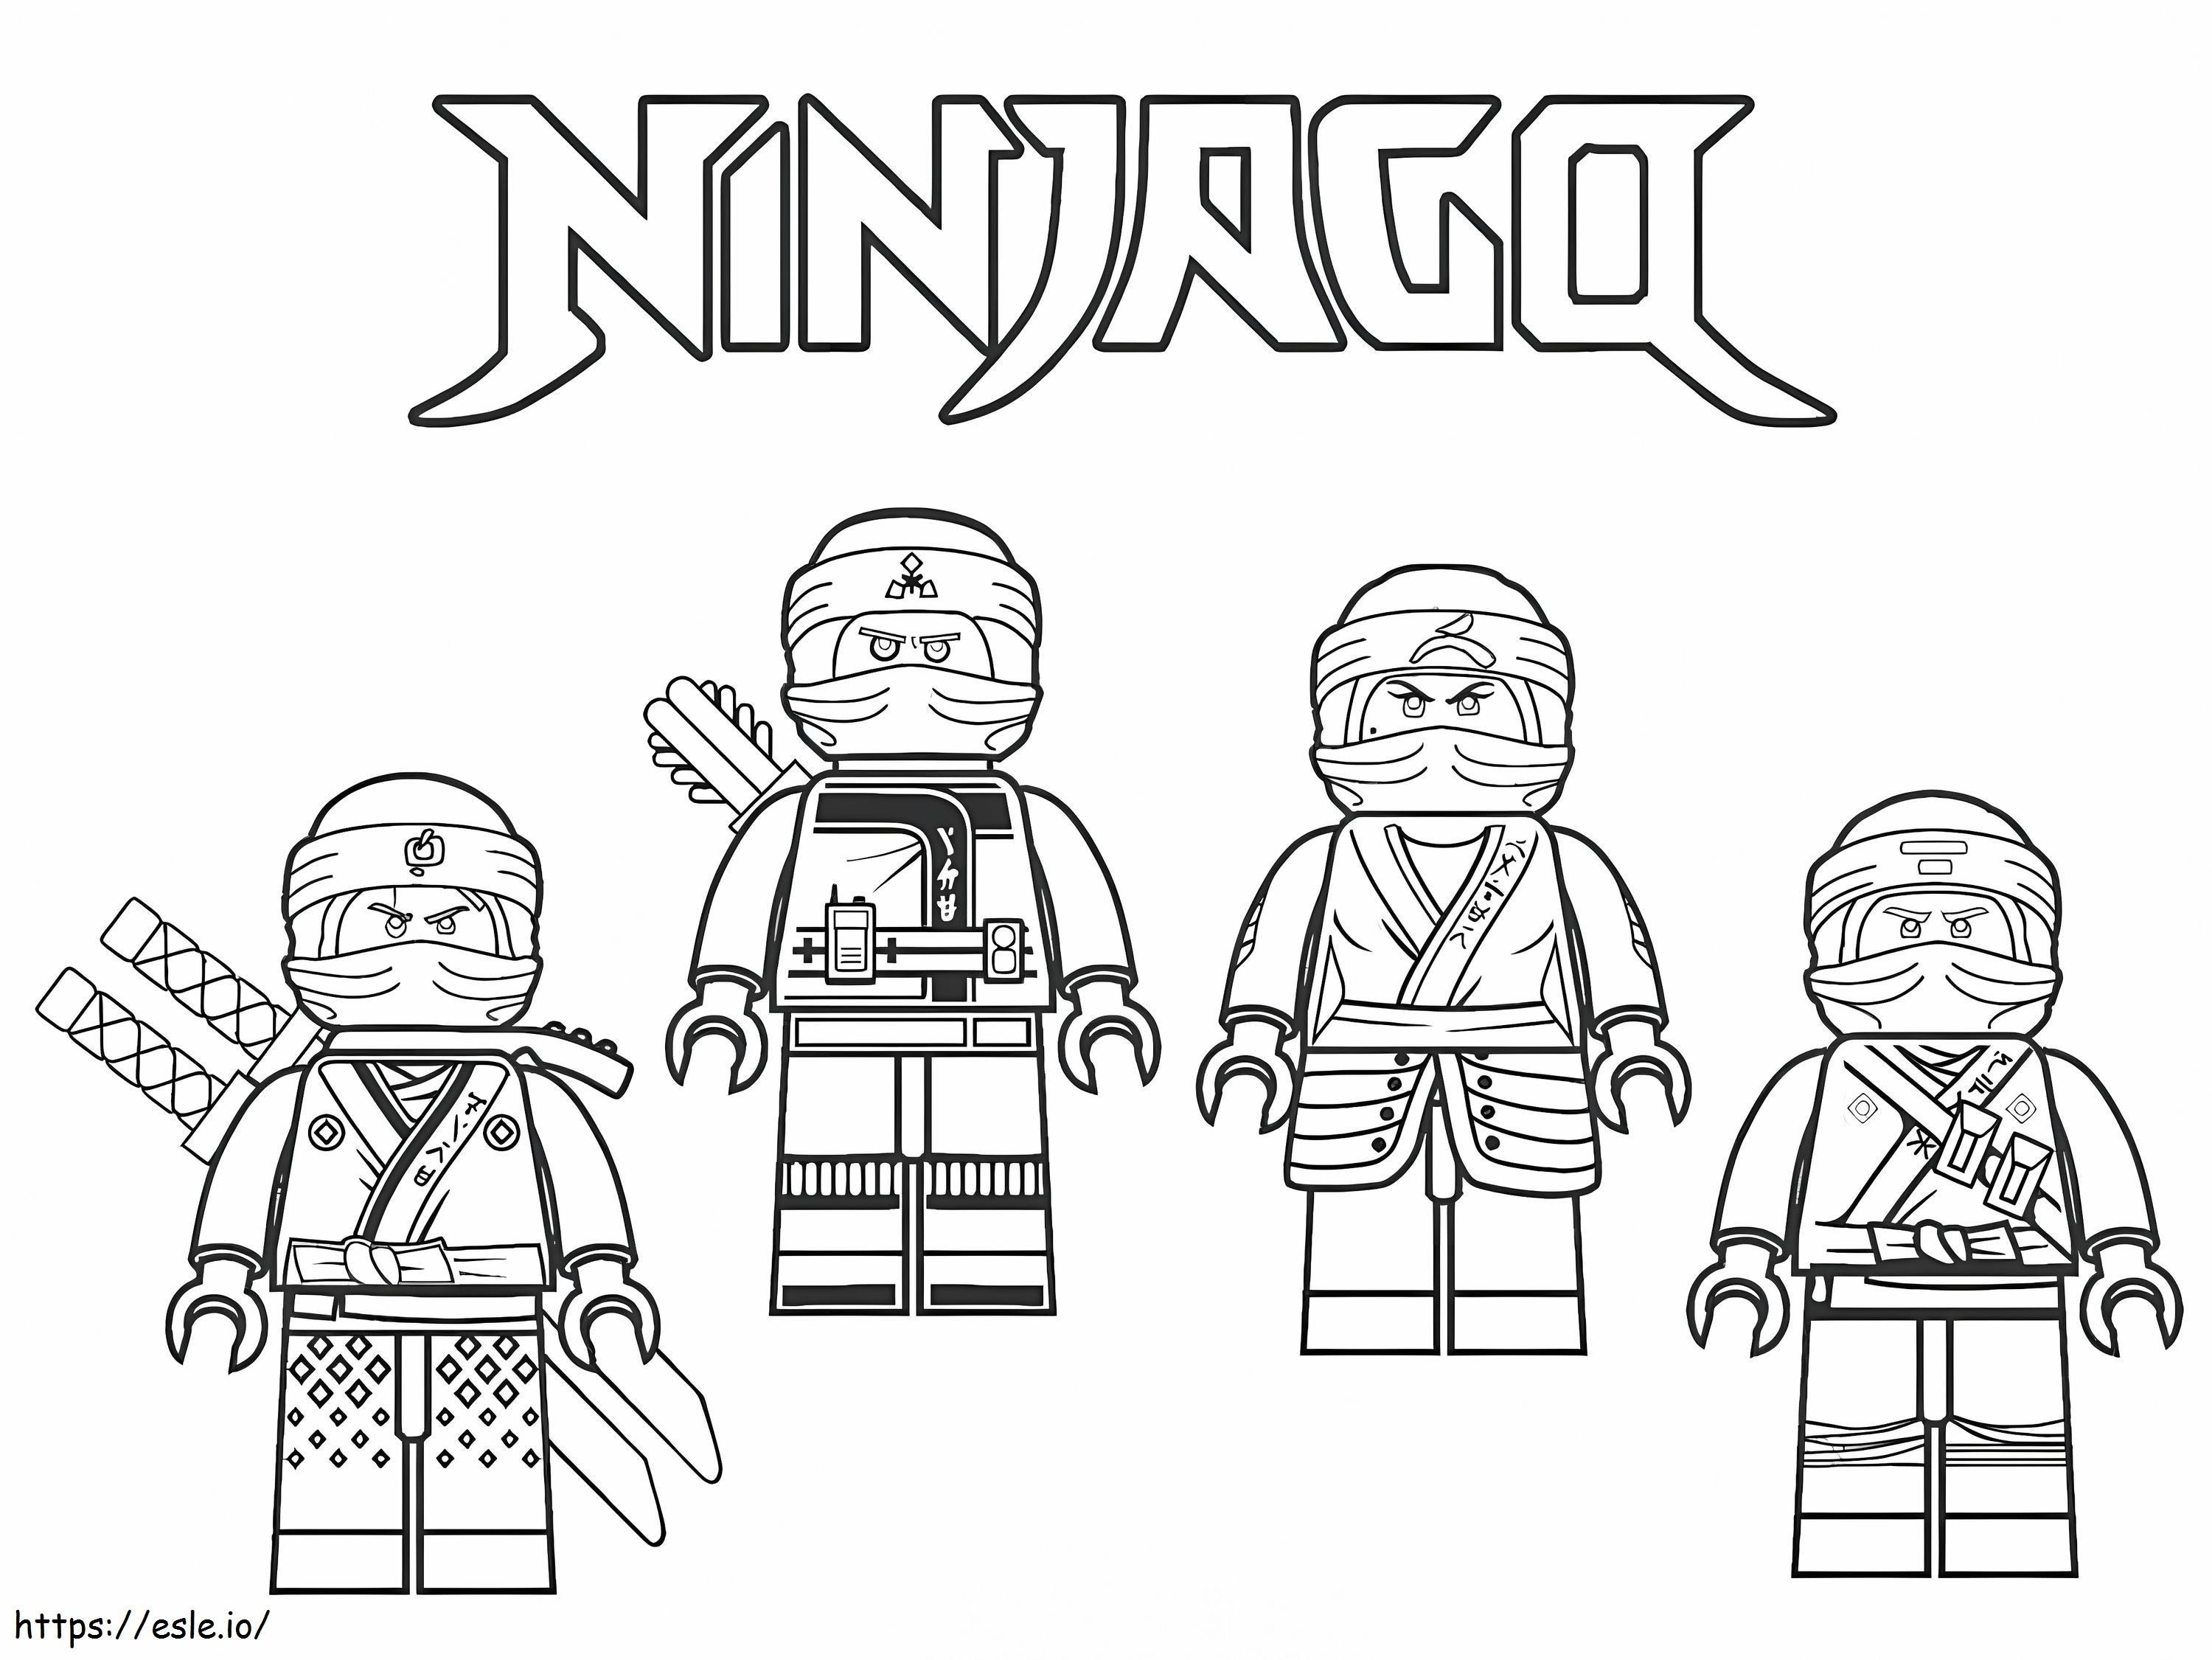 Ninjago 1 coloring page